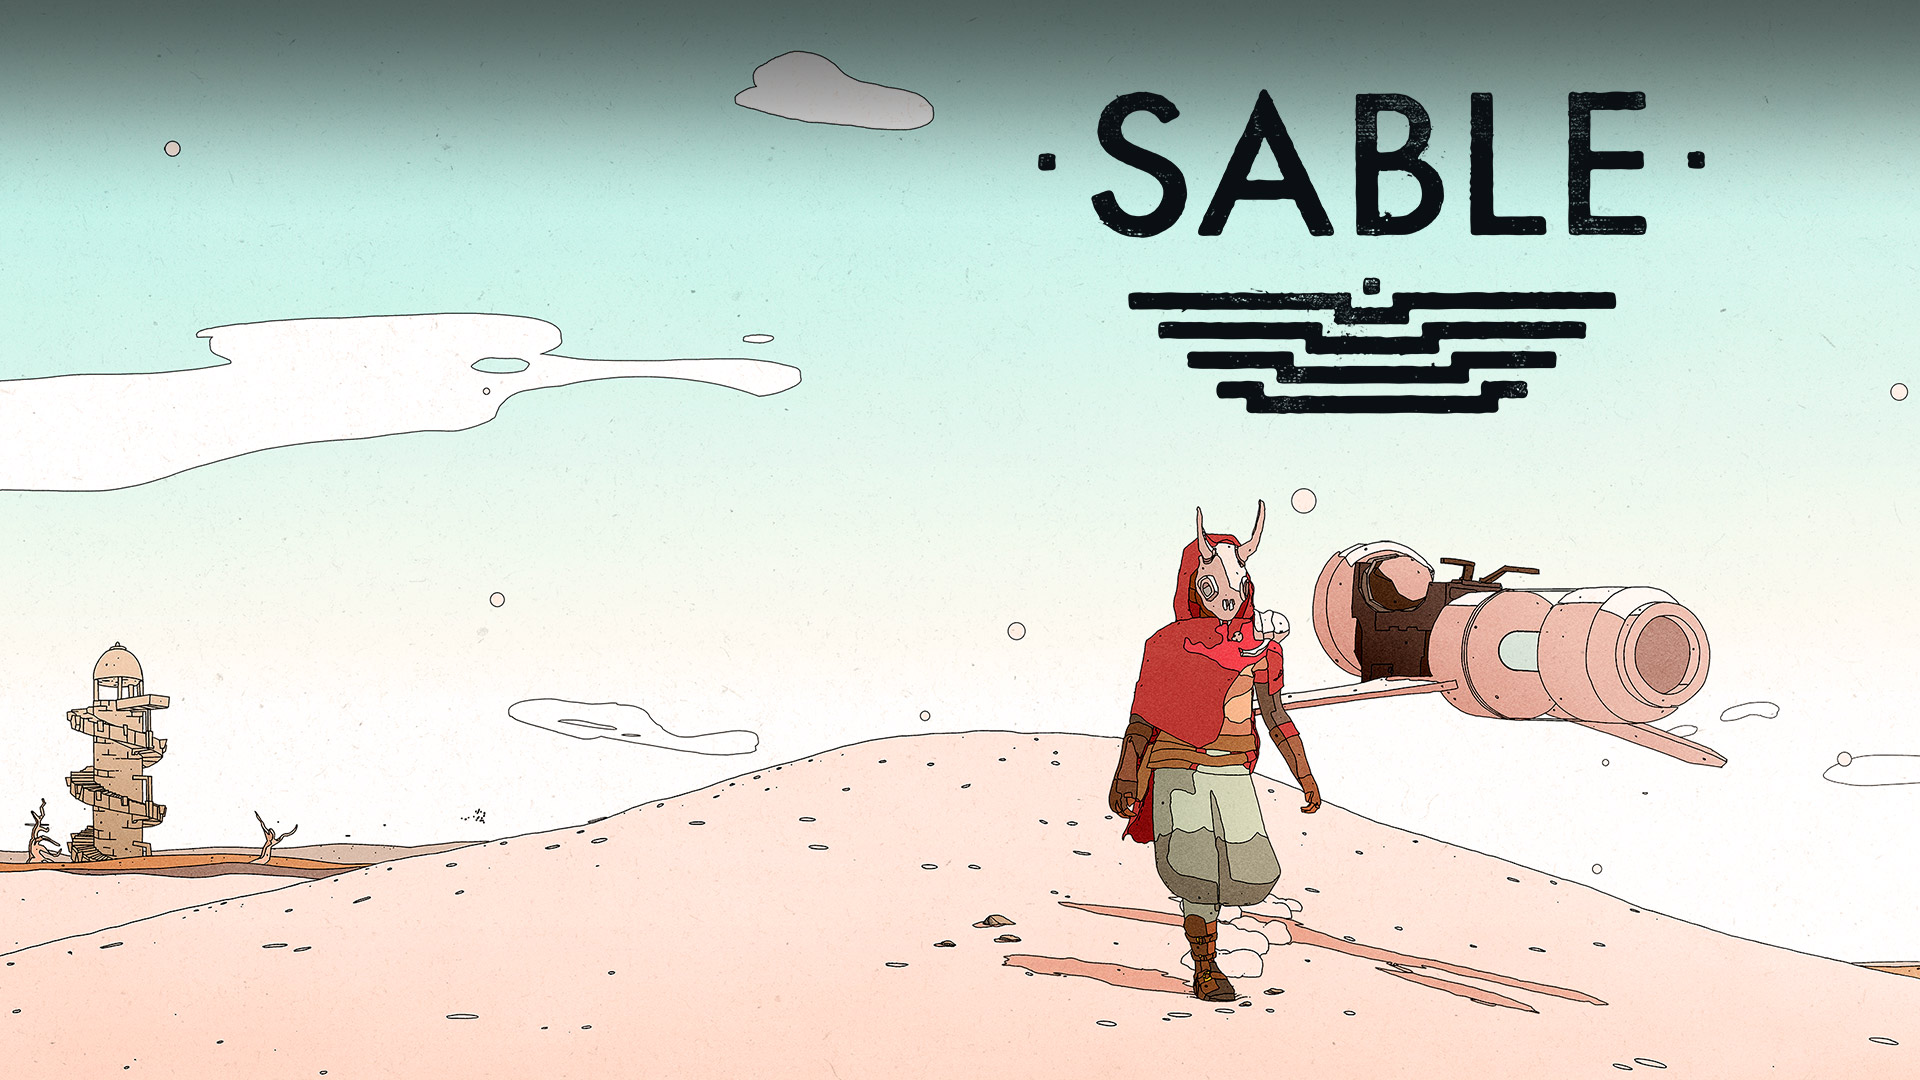 Logotipo de Sable, Sable en el desierto con una moto voladora